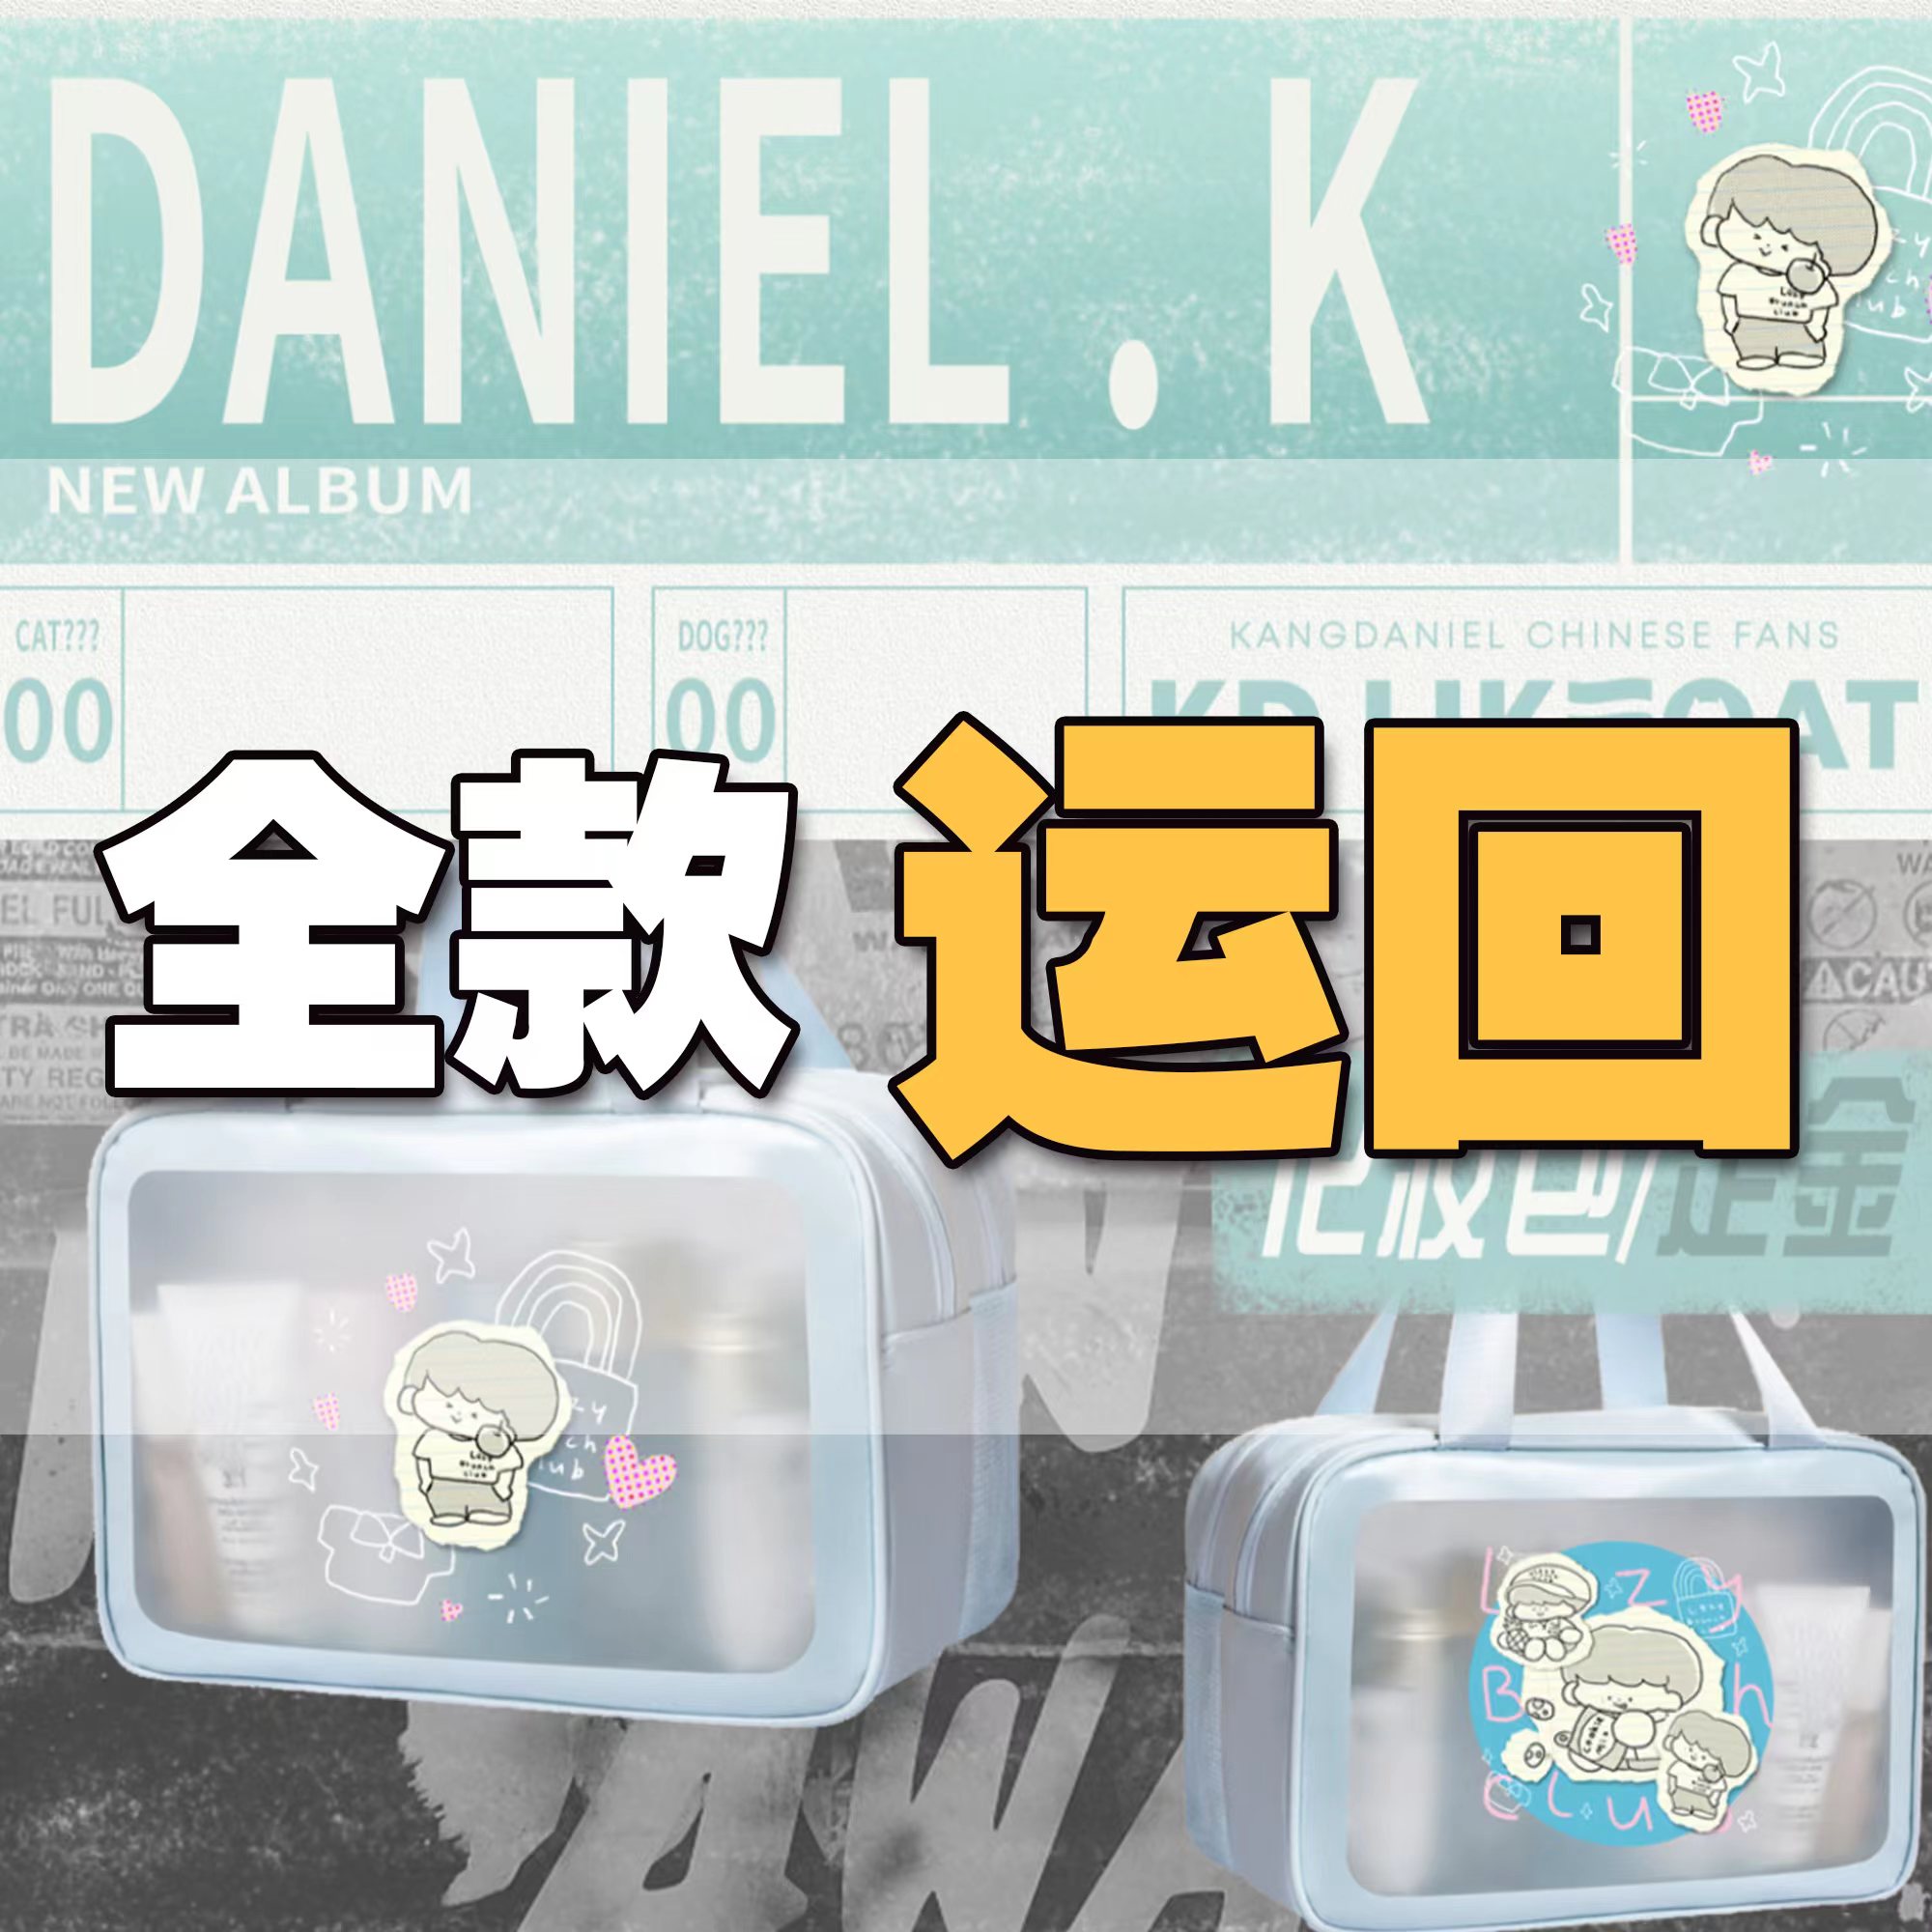 [全款 化妆包 特典专] [视频签售活动] KANG DANIEL - 迷你4辑 [REALIEZ] (随机版本)_姜丹尼尔吧_likecat